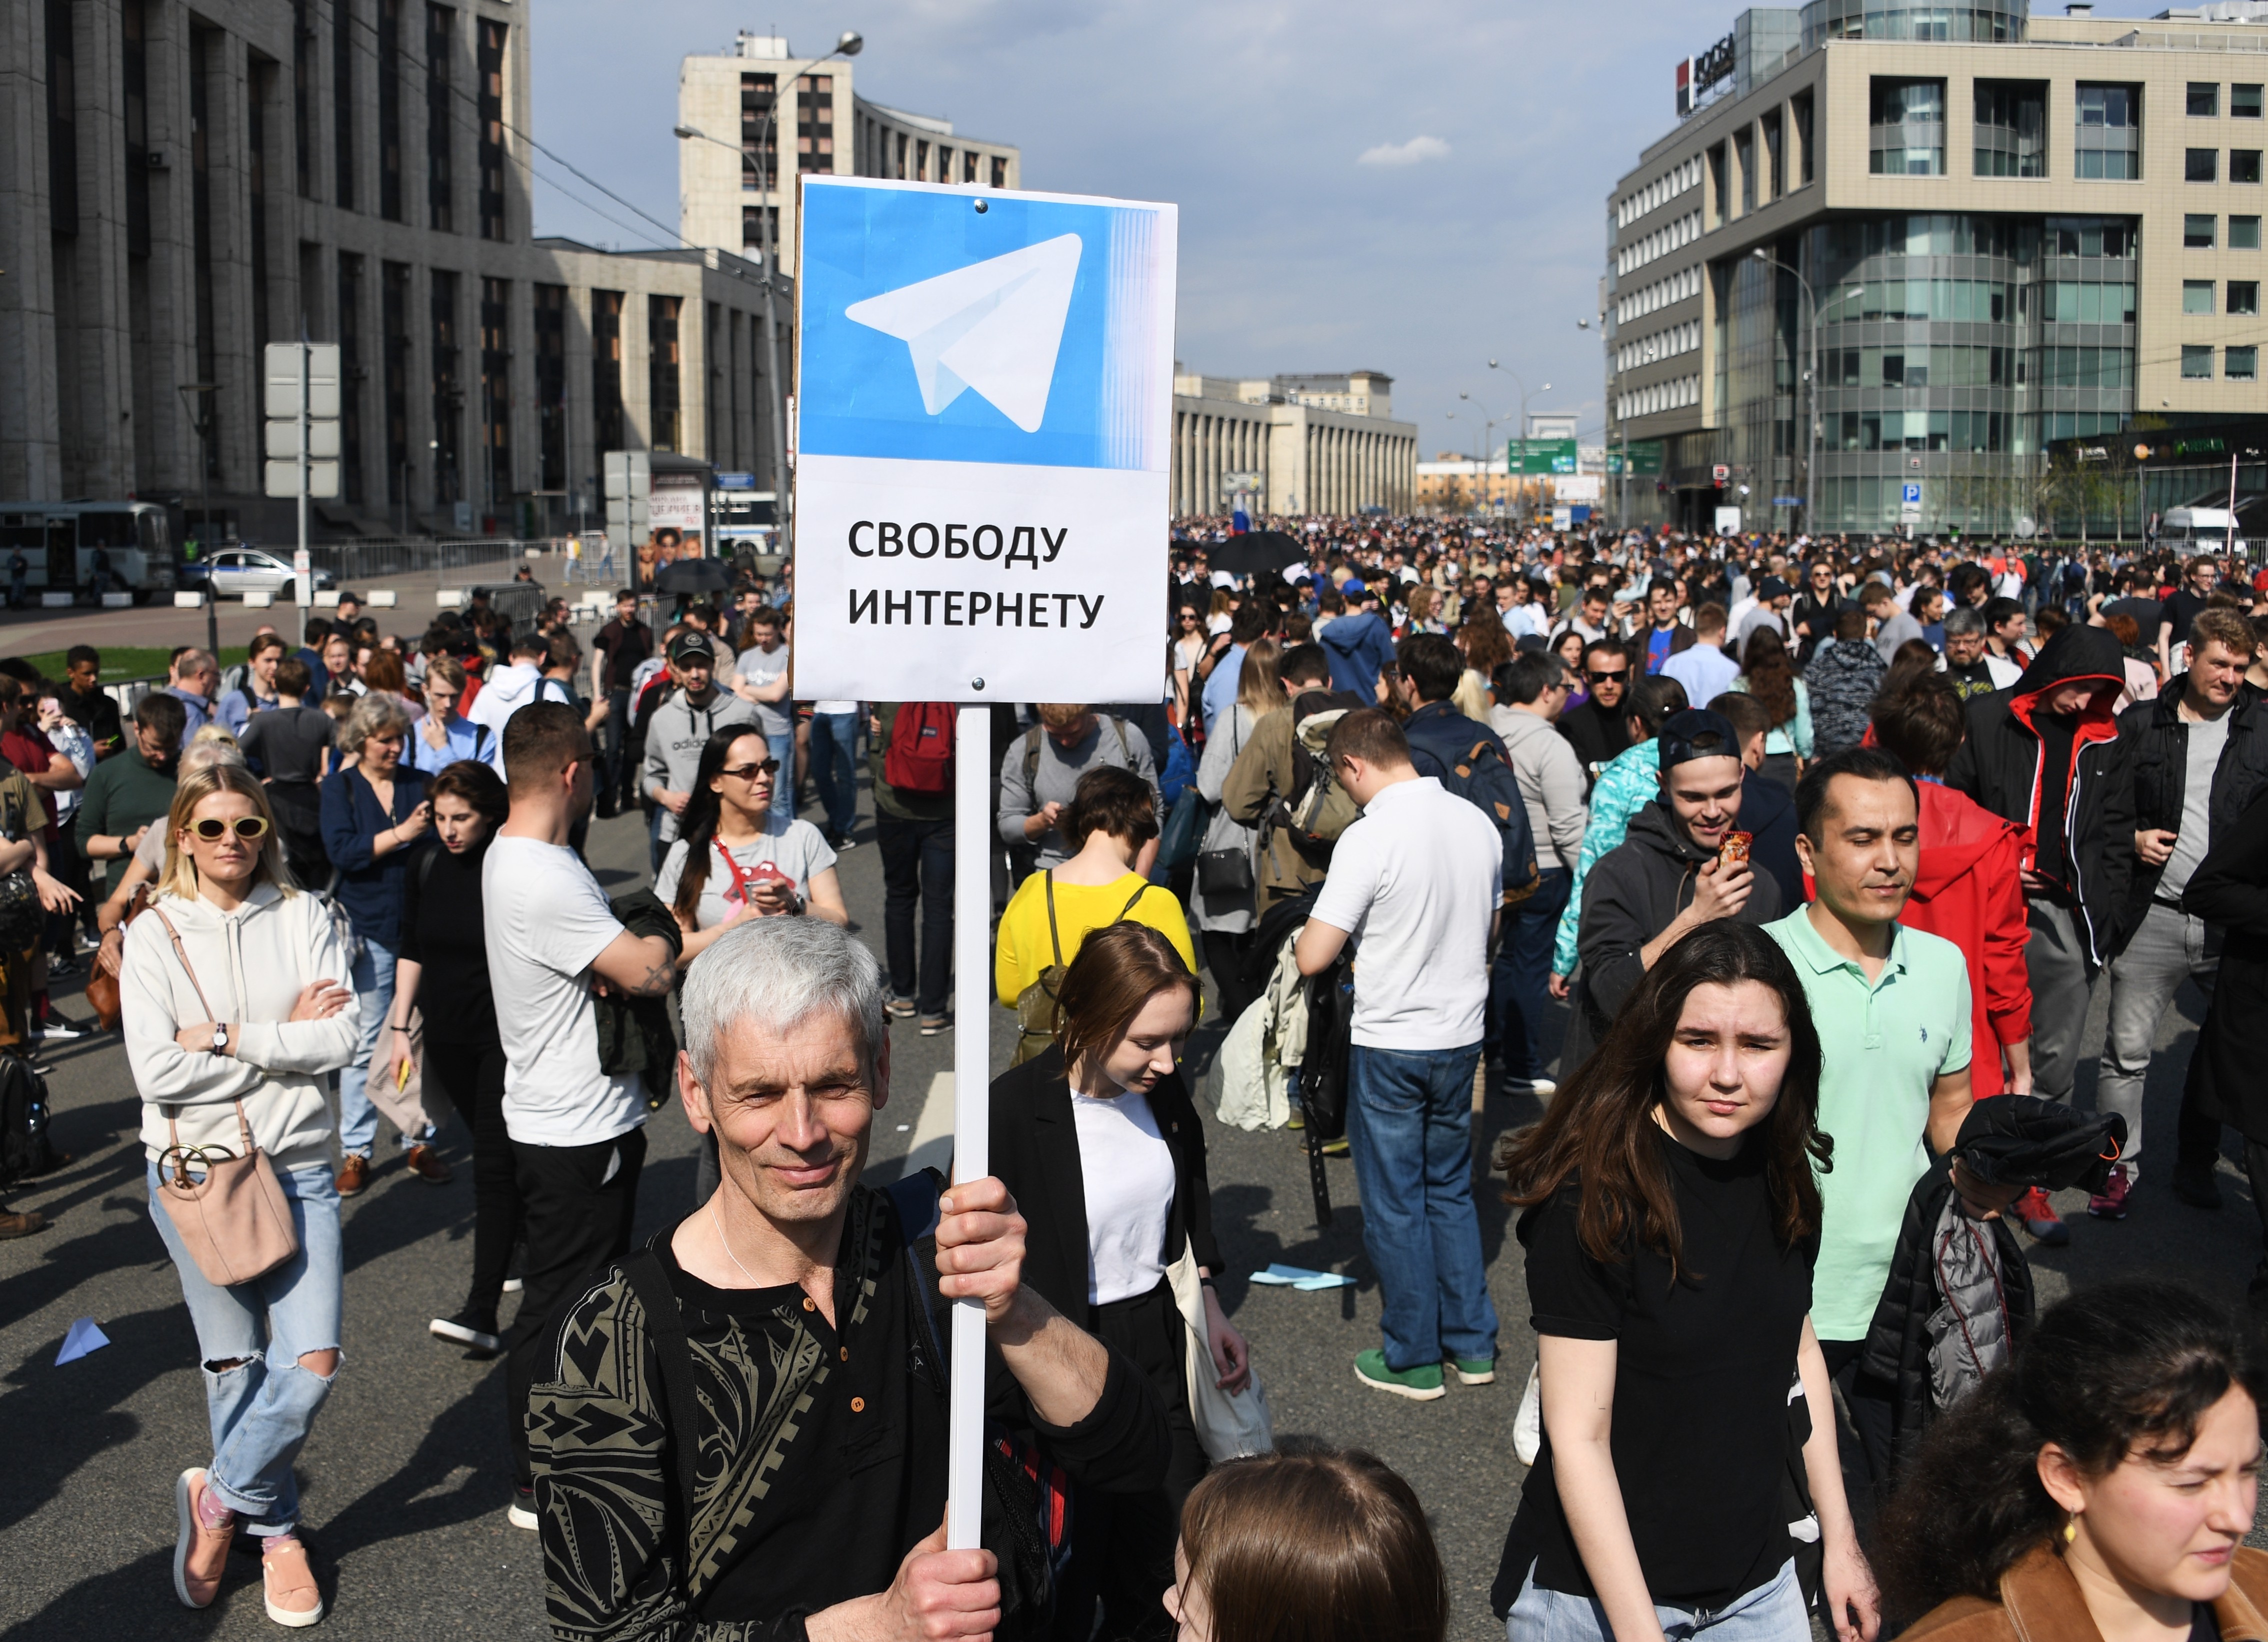 Участники митинга в поддержку мессенджера Telegram на проспекте Сахарова в Москве.
Фото: &copy; РИА Новости/&nbsp;Григорий Сысоев